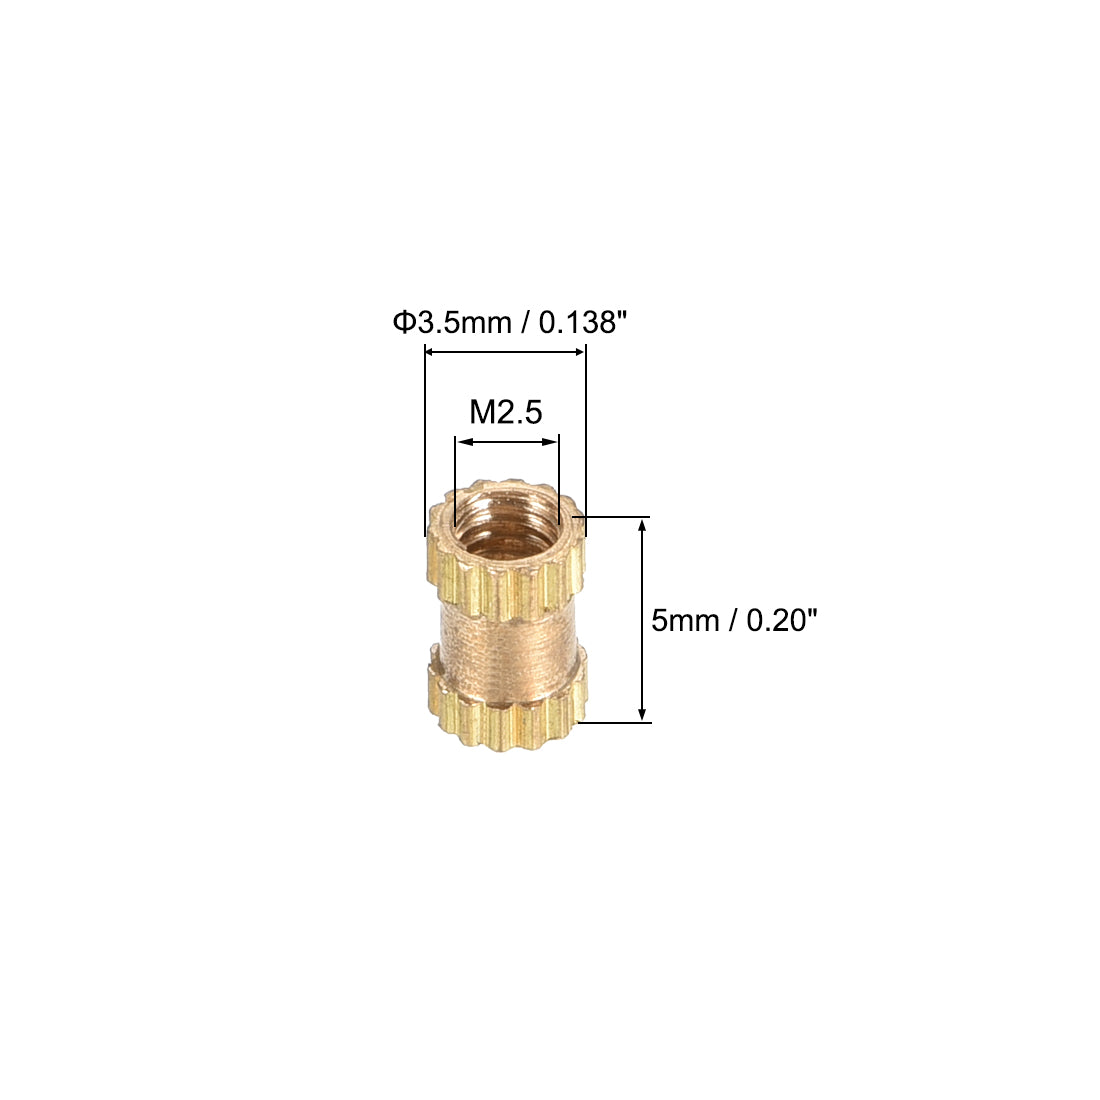 uxcell Uxcell Knurled Insert Nuts, M2.5 x 5mm(L) x 3.5mm(OD) Female Thread Brass Embedment Assortment Kit, 50 Pcs